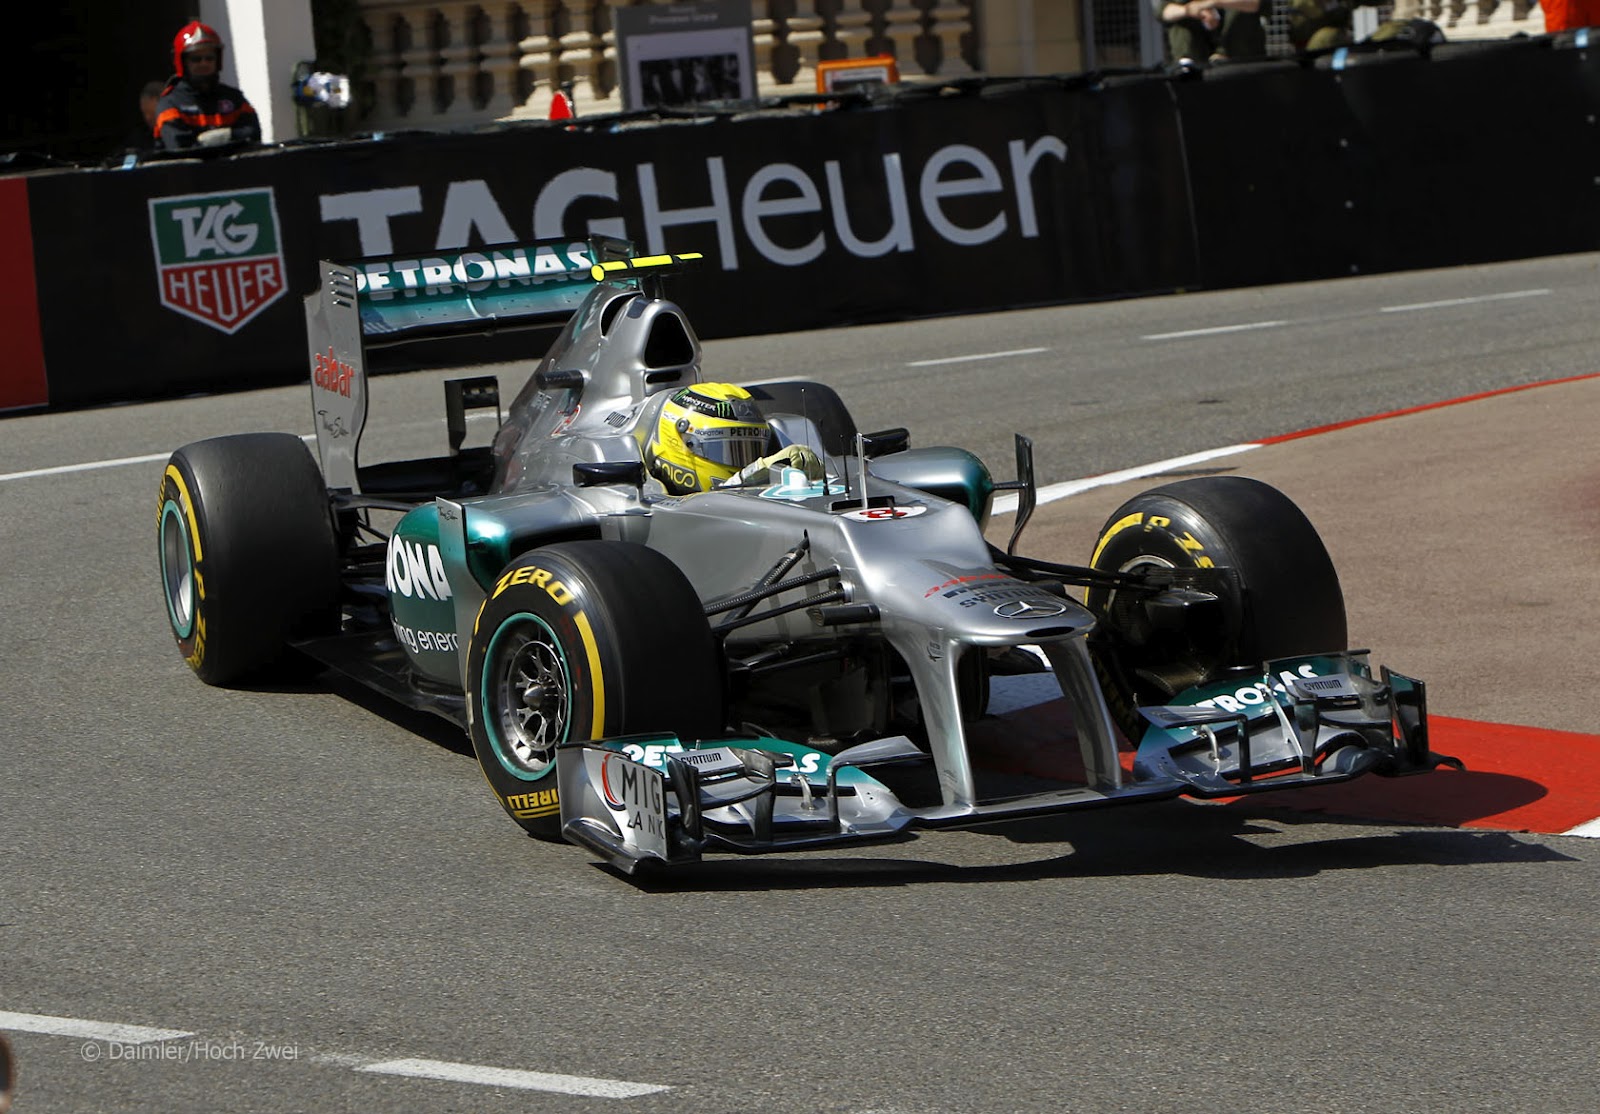 http://3.bp.blogspot.com/-_XVlx_ejDYM/UBM67MUlQFI/AAAAAAAAB3s/MHu2KXdmHYQ/s1600/Mercedes+Rosberg+Monaco+2012-2.jpg